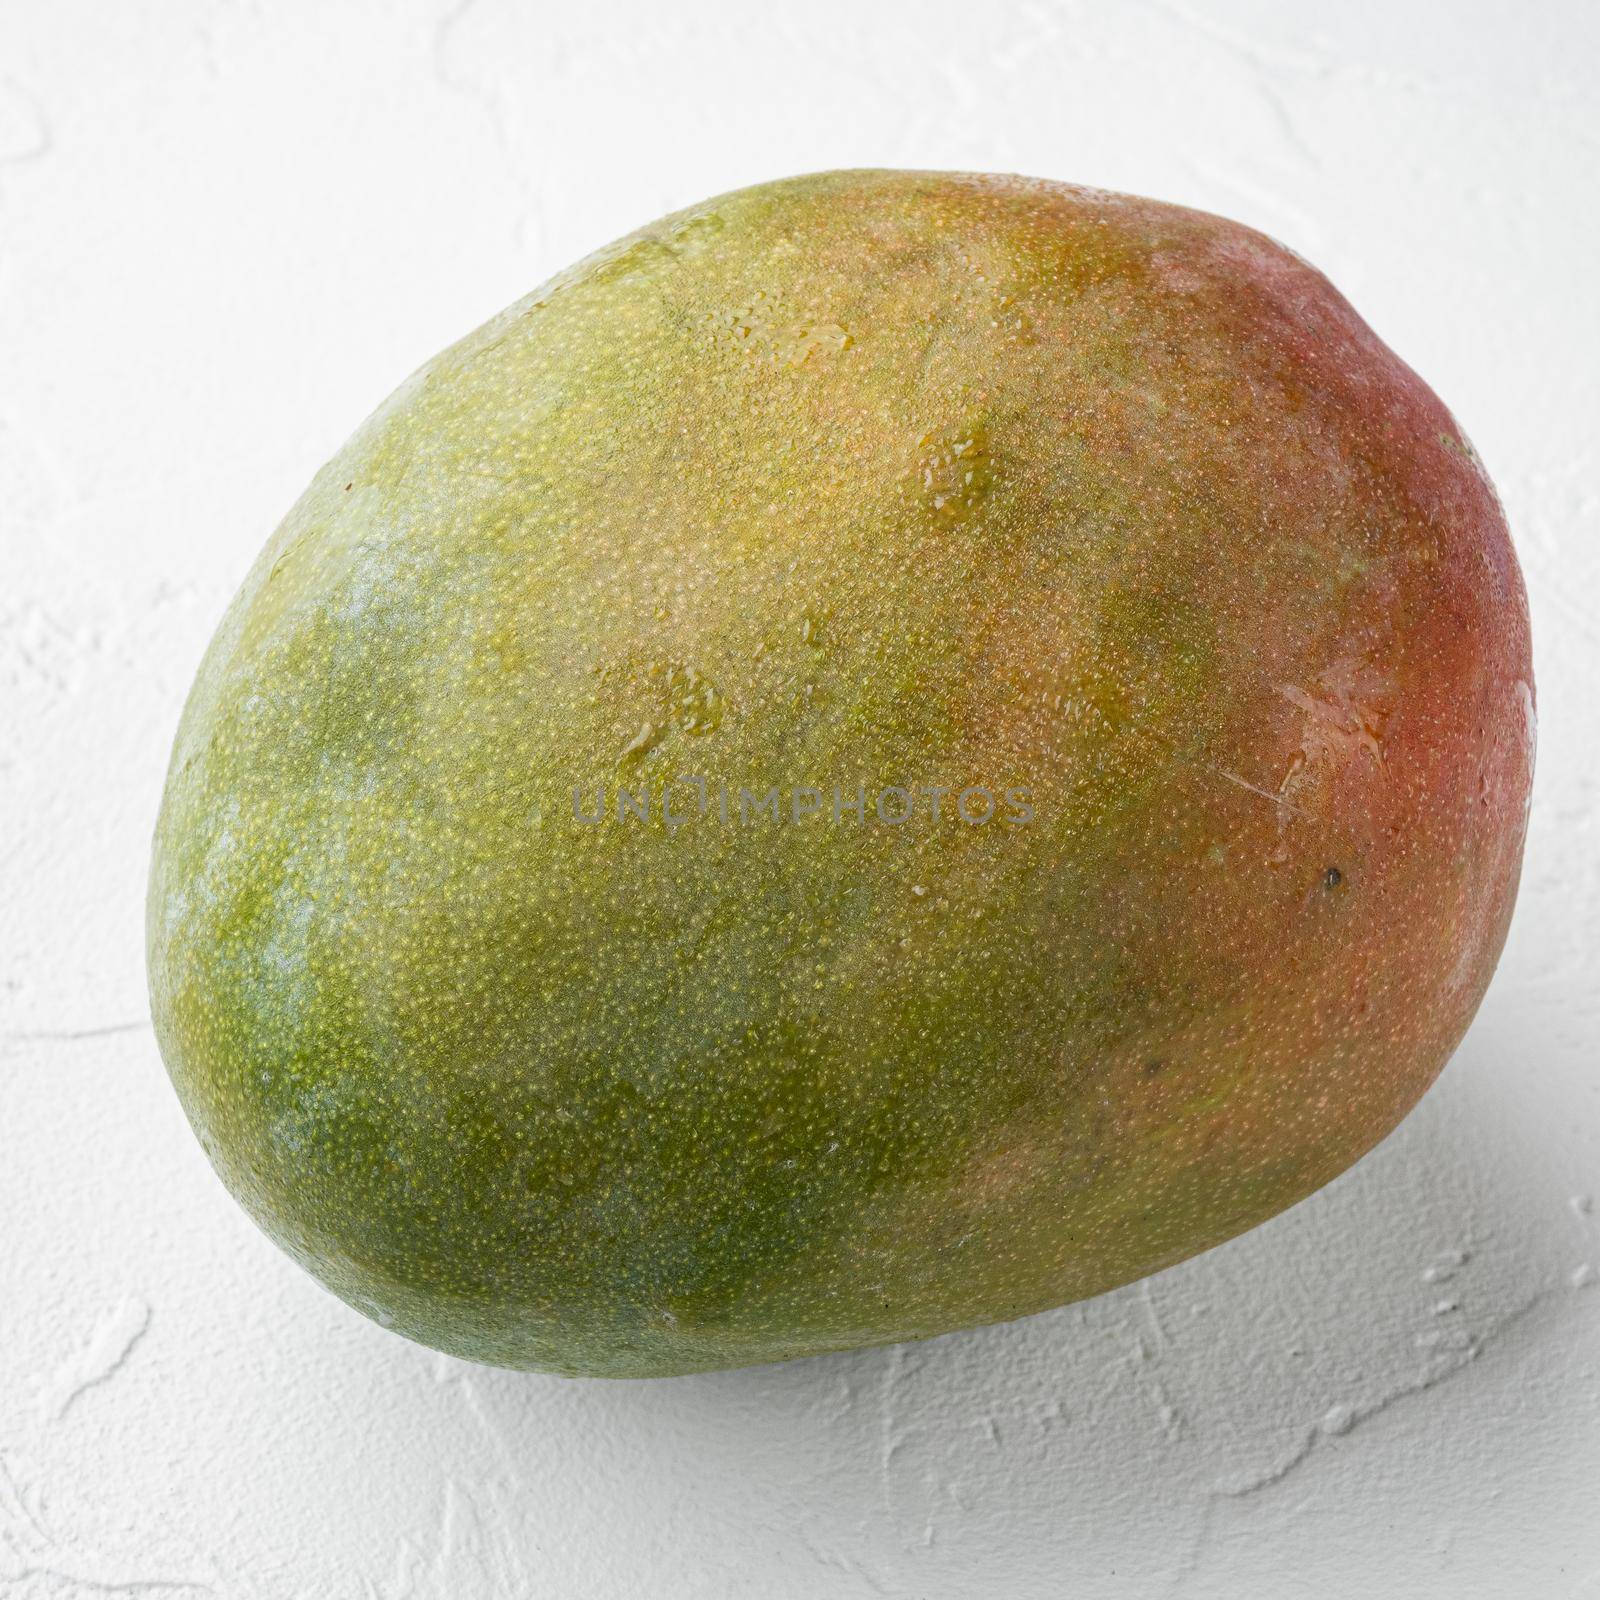 Mango whole fruit, on white stone table background, square format by Ilianesolenyi